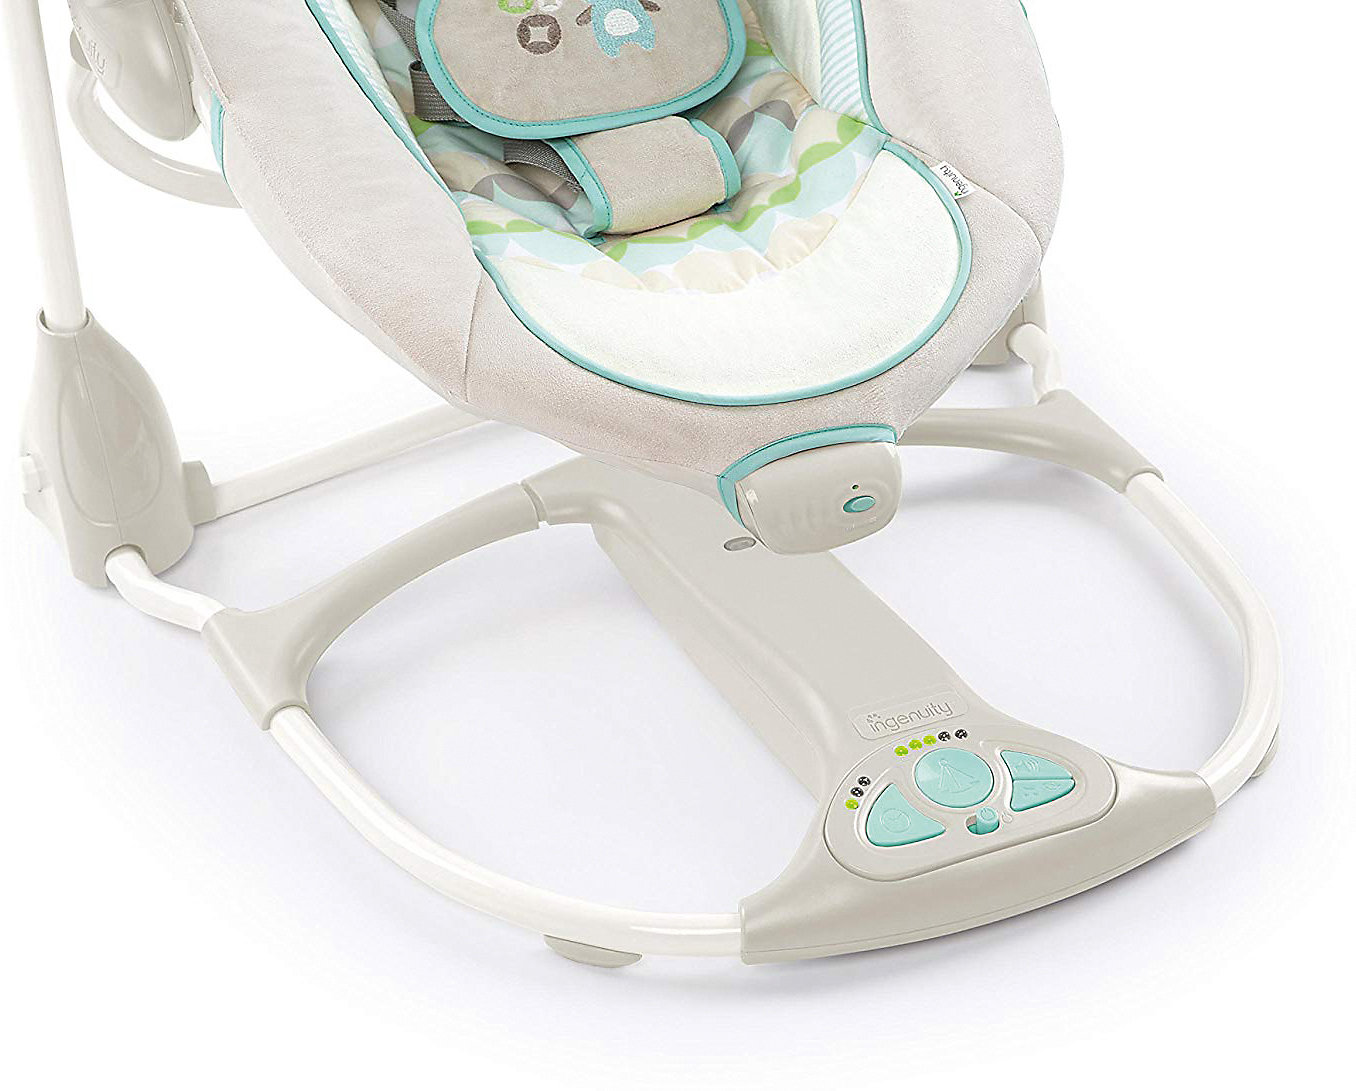 Bei der bright stars ingenuity babyschaukel handelt es sich um eine elektrische babyschaukel mit vielen tollen extras für eltern und babys. Neu Ingenuity Babyschaukel ConvertMe Swing-2-Seat ...